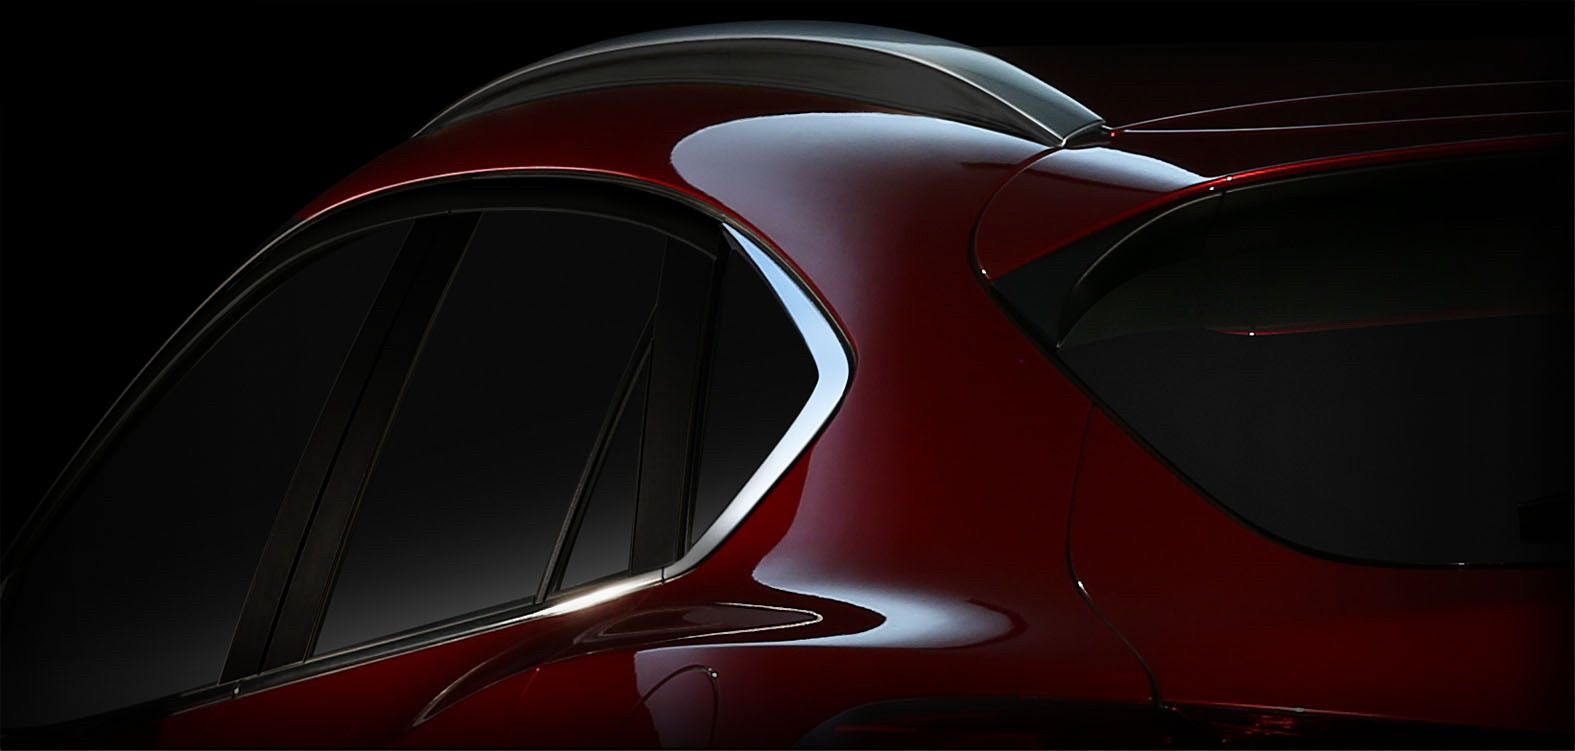 2017 Mazda CX-4